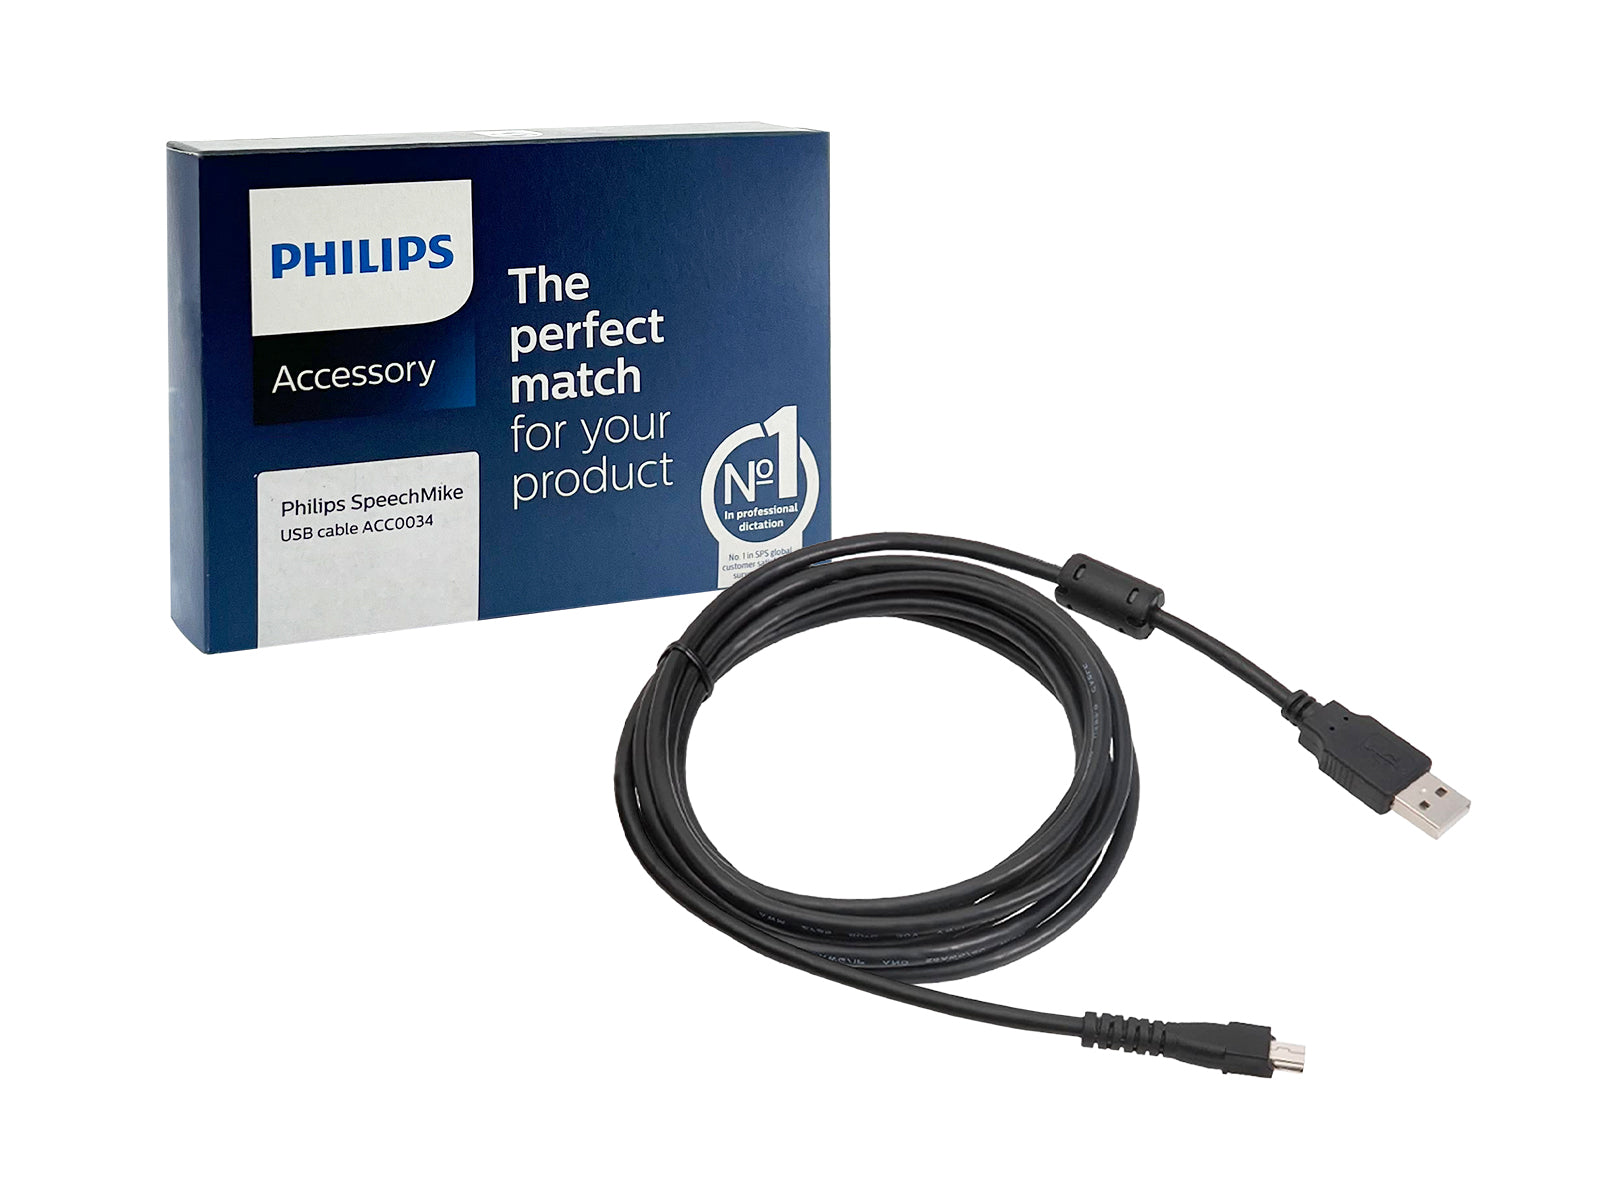 Câble USB de remplacement Philips pour microphones Speechmike - 8 pieds | 2.4 m (ACC0034) Monitors.com